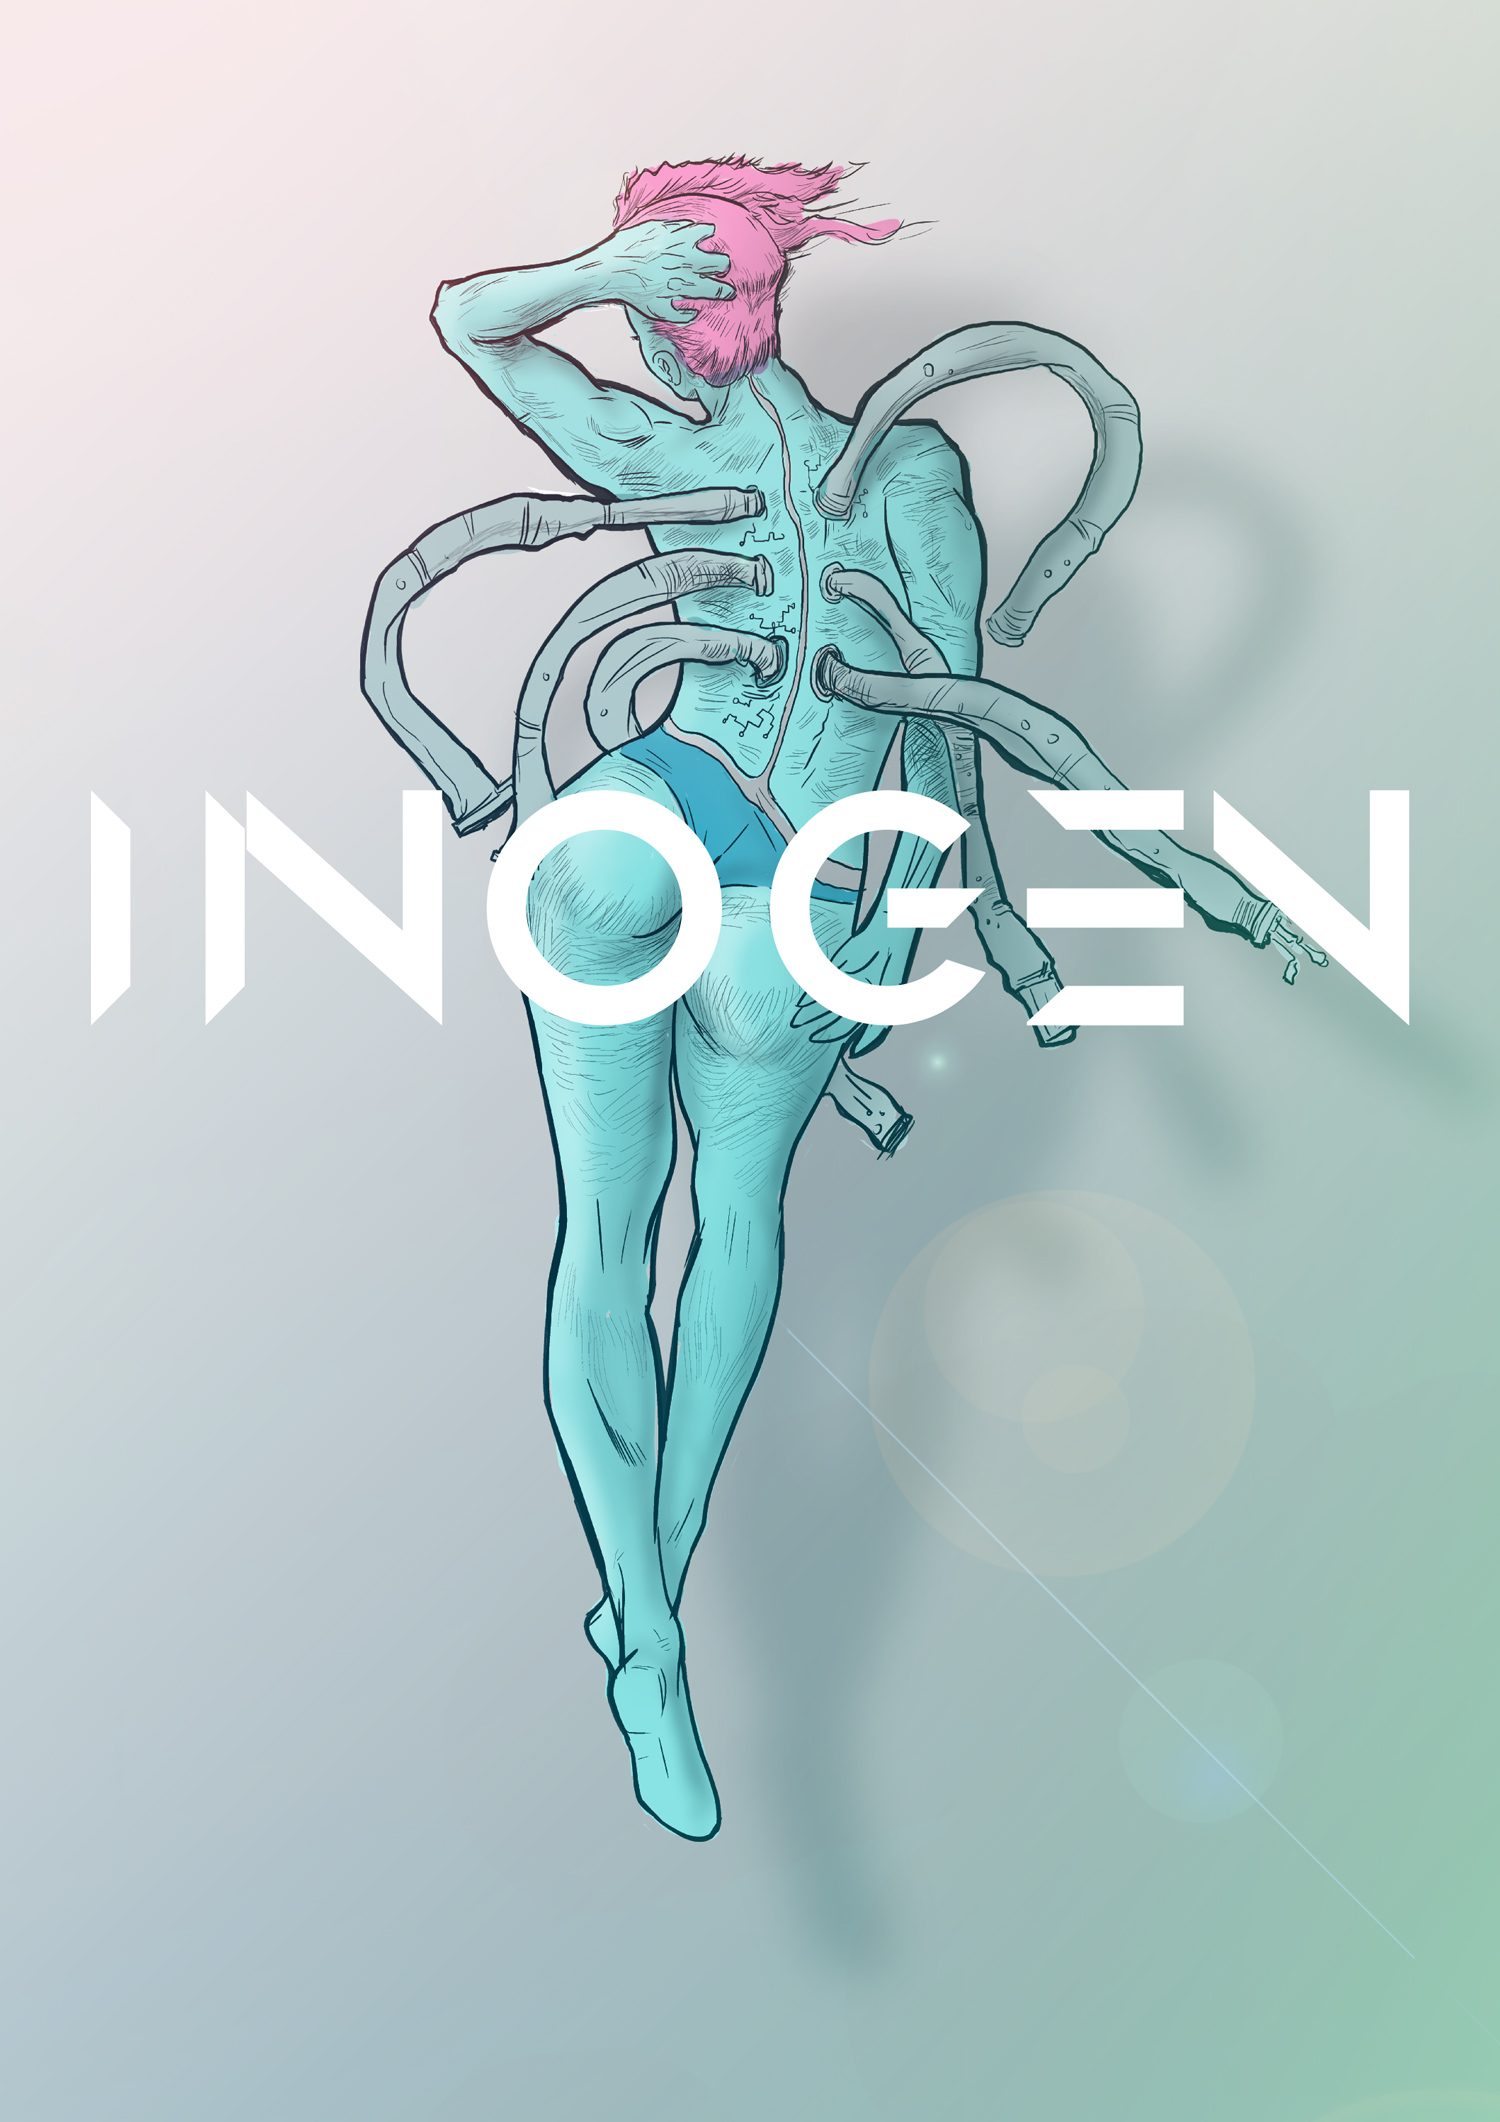 INOGEN-2